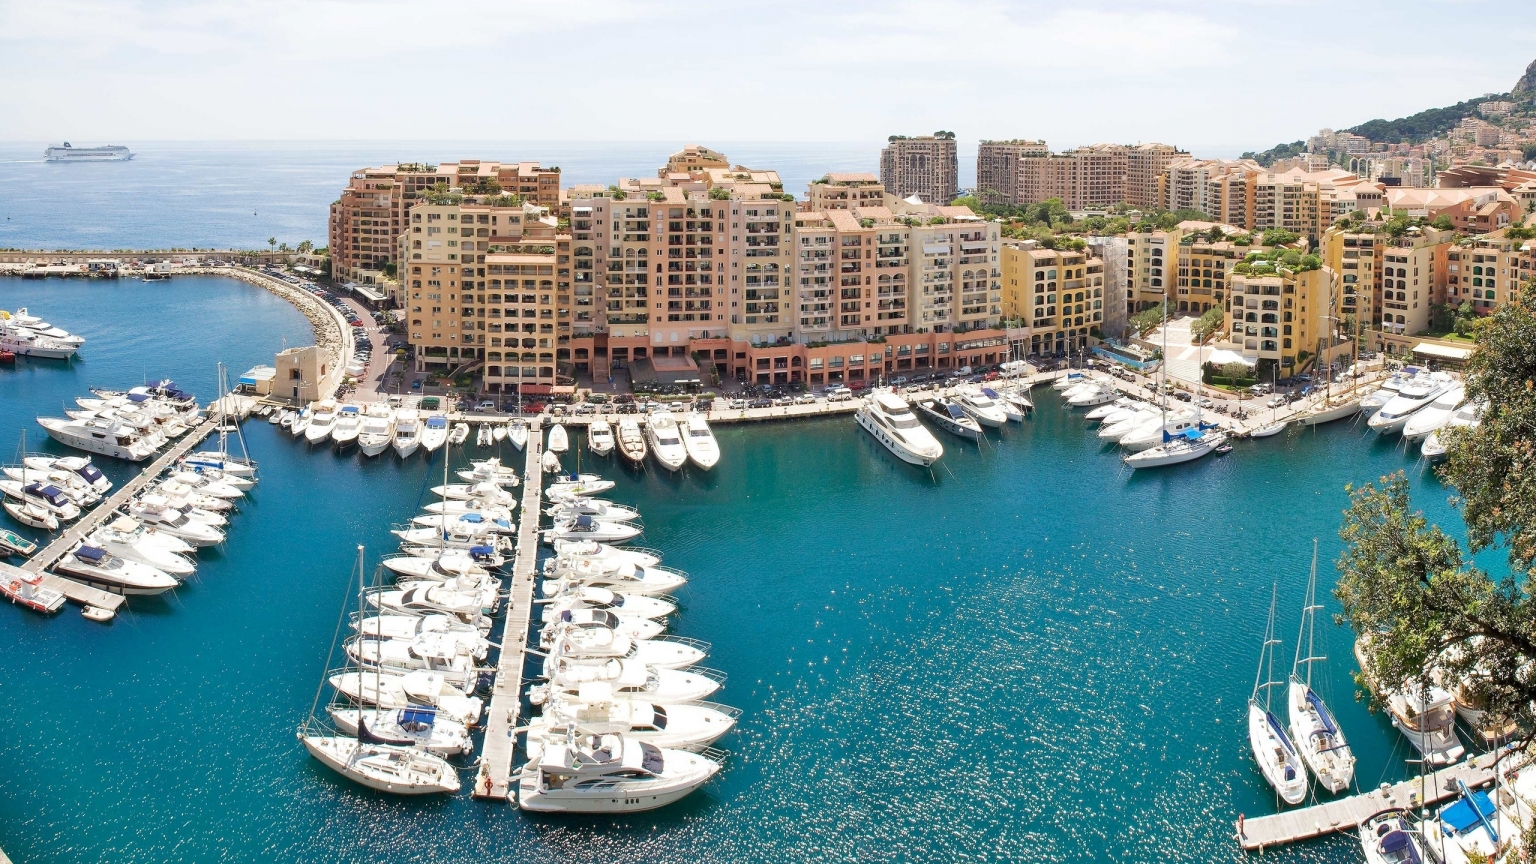 Monaco Port for 1536 x 864 HDTV resolution